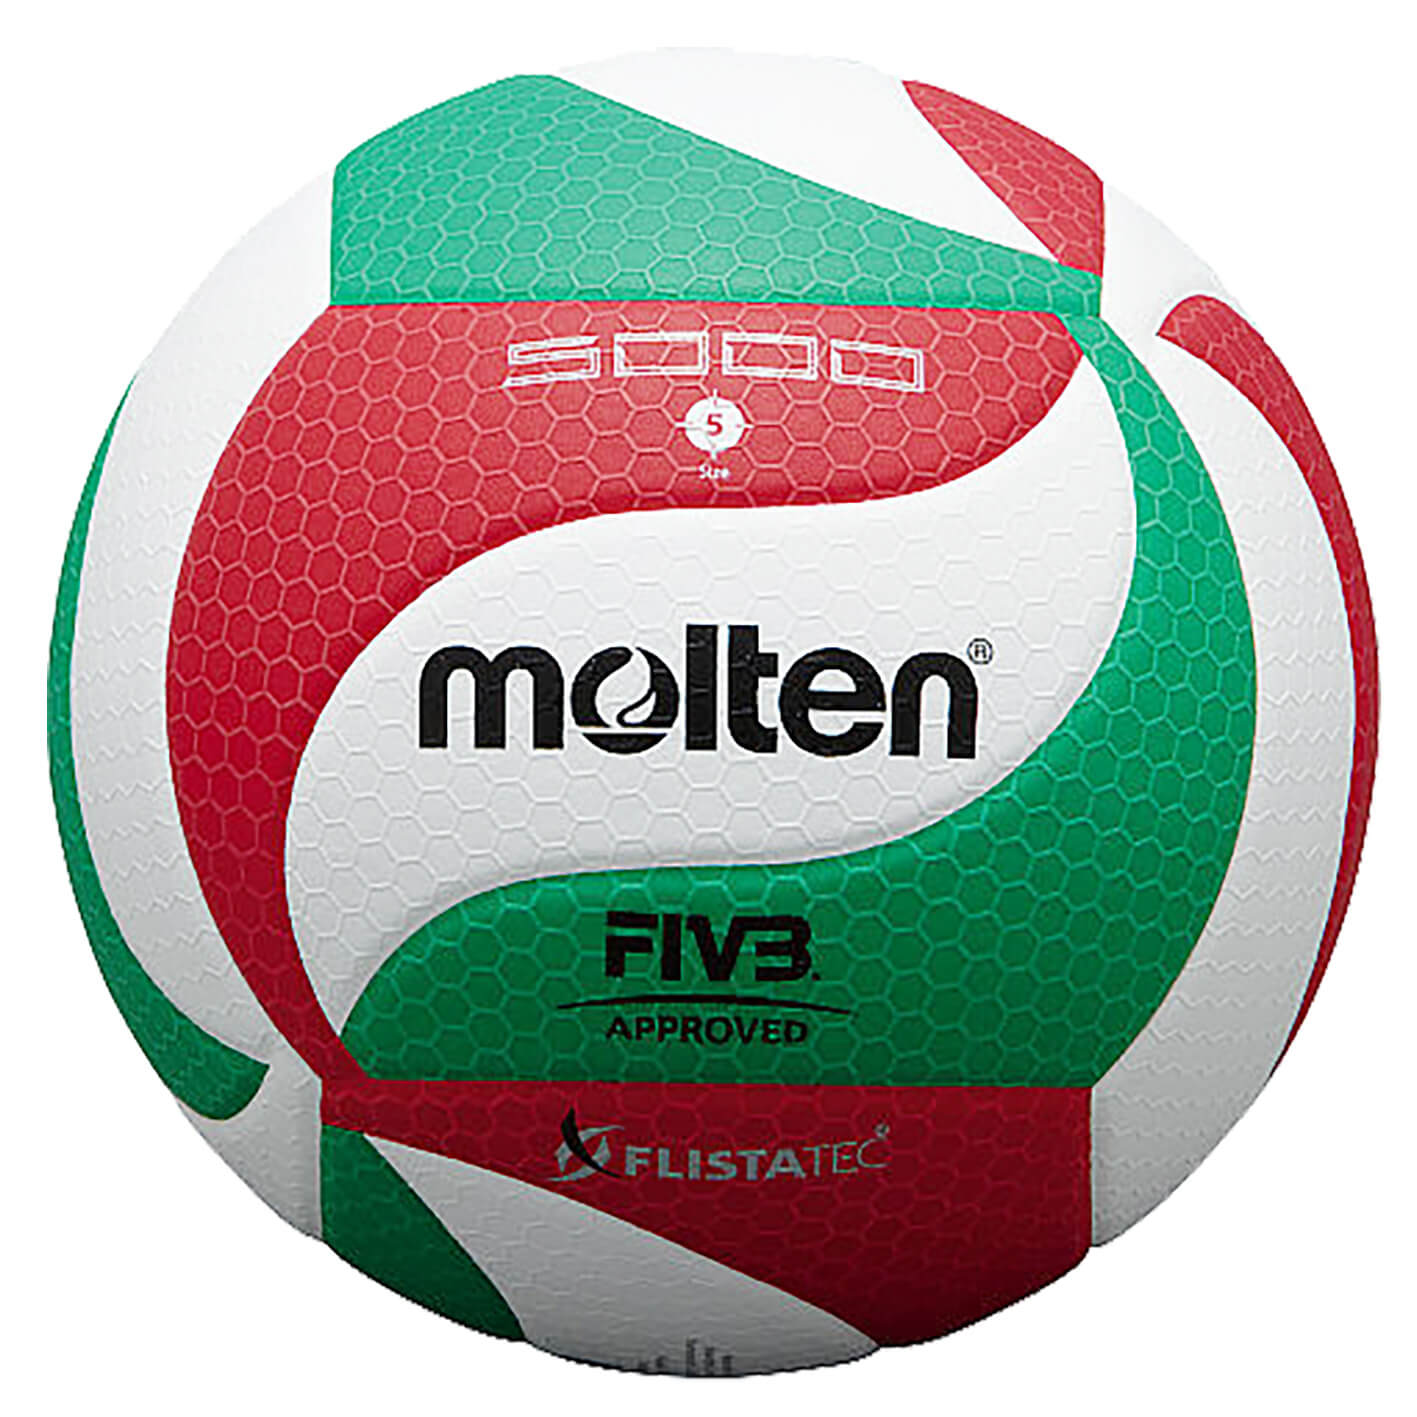 Molten 5000 Filstatec volleyball